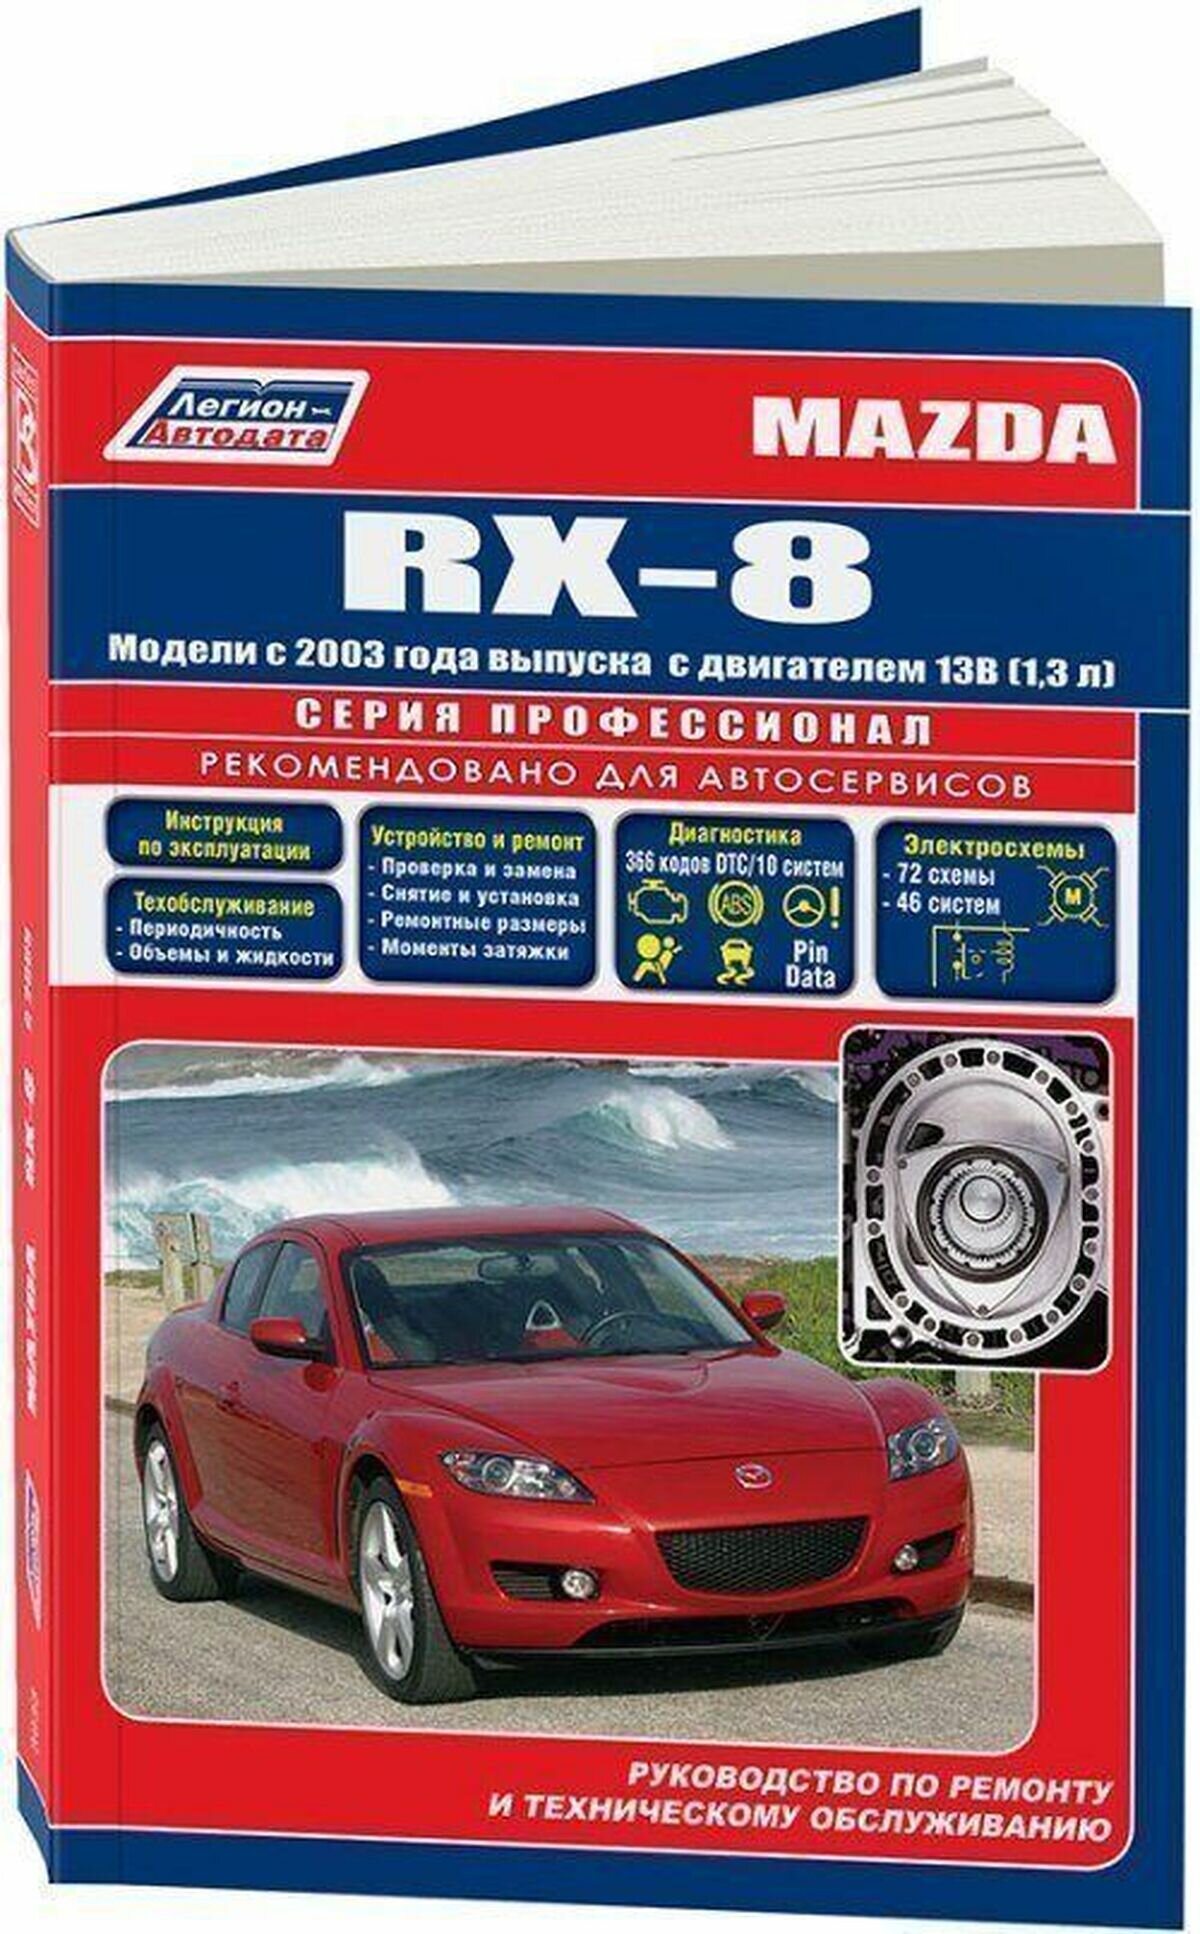 Автокнига: руководство / инструкция по ремонту и эксплуатации MAZDA RX-8 (мазда РХ-8) бензин с 2003 года выпуска , 978-5-88850-393-5, издательство Легион-Aвтодата